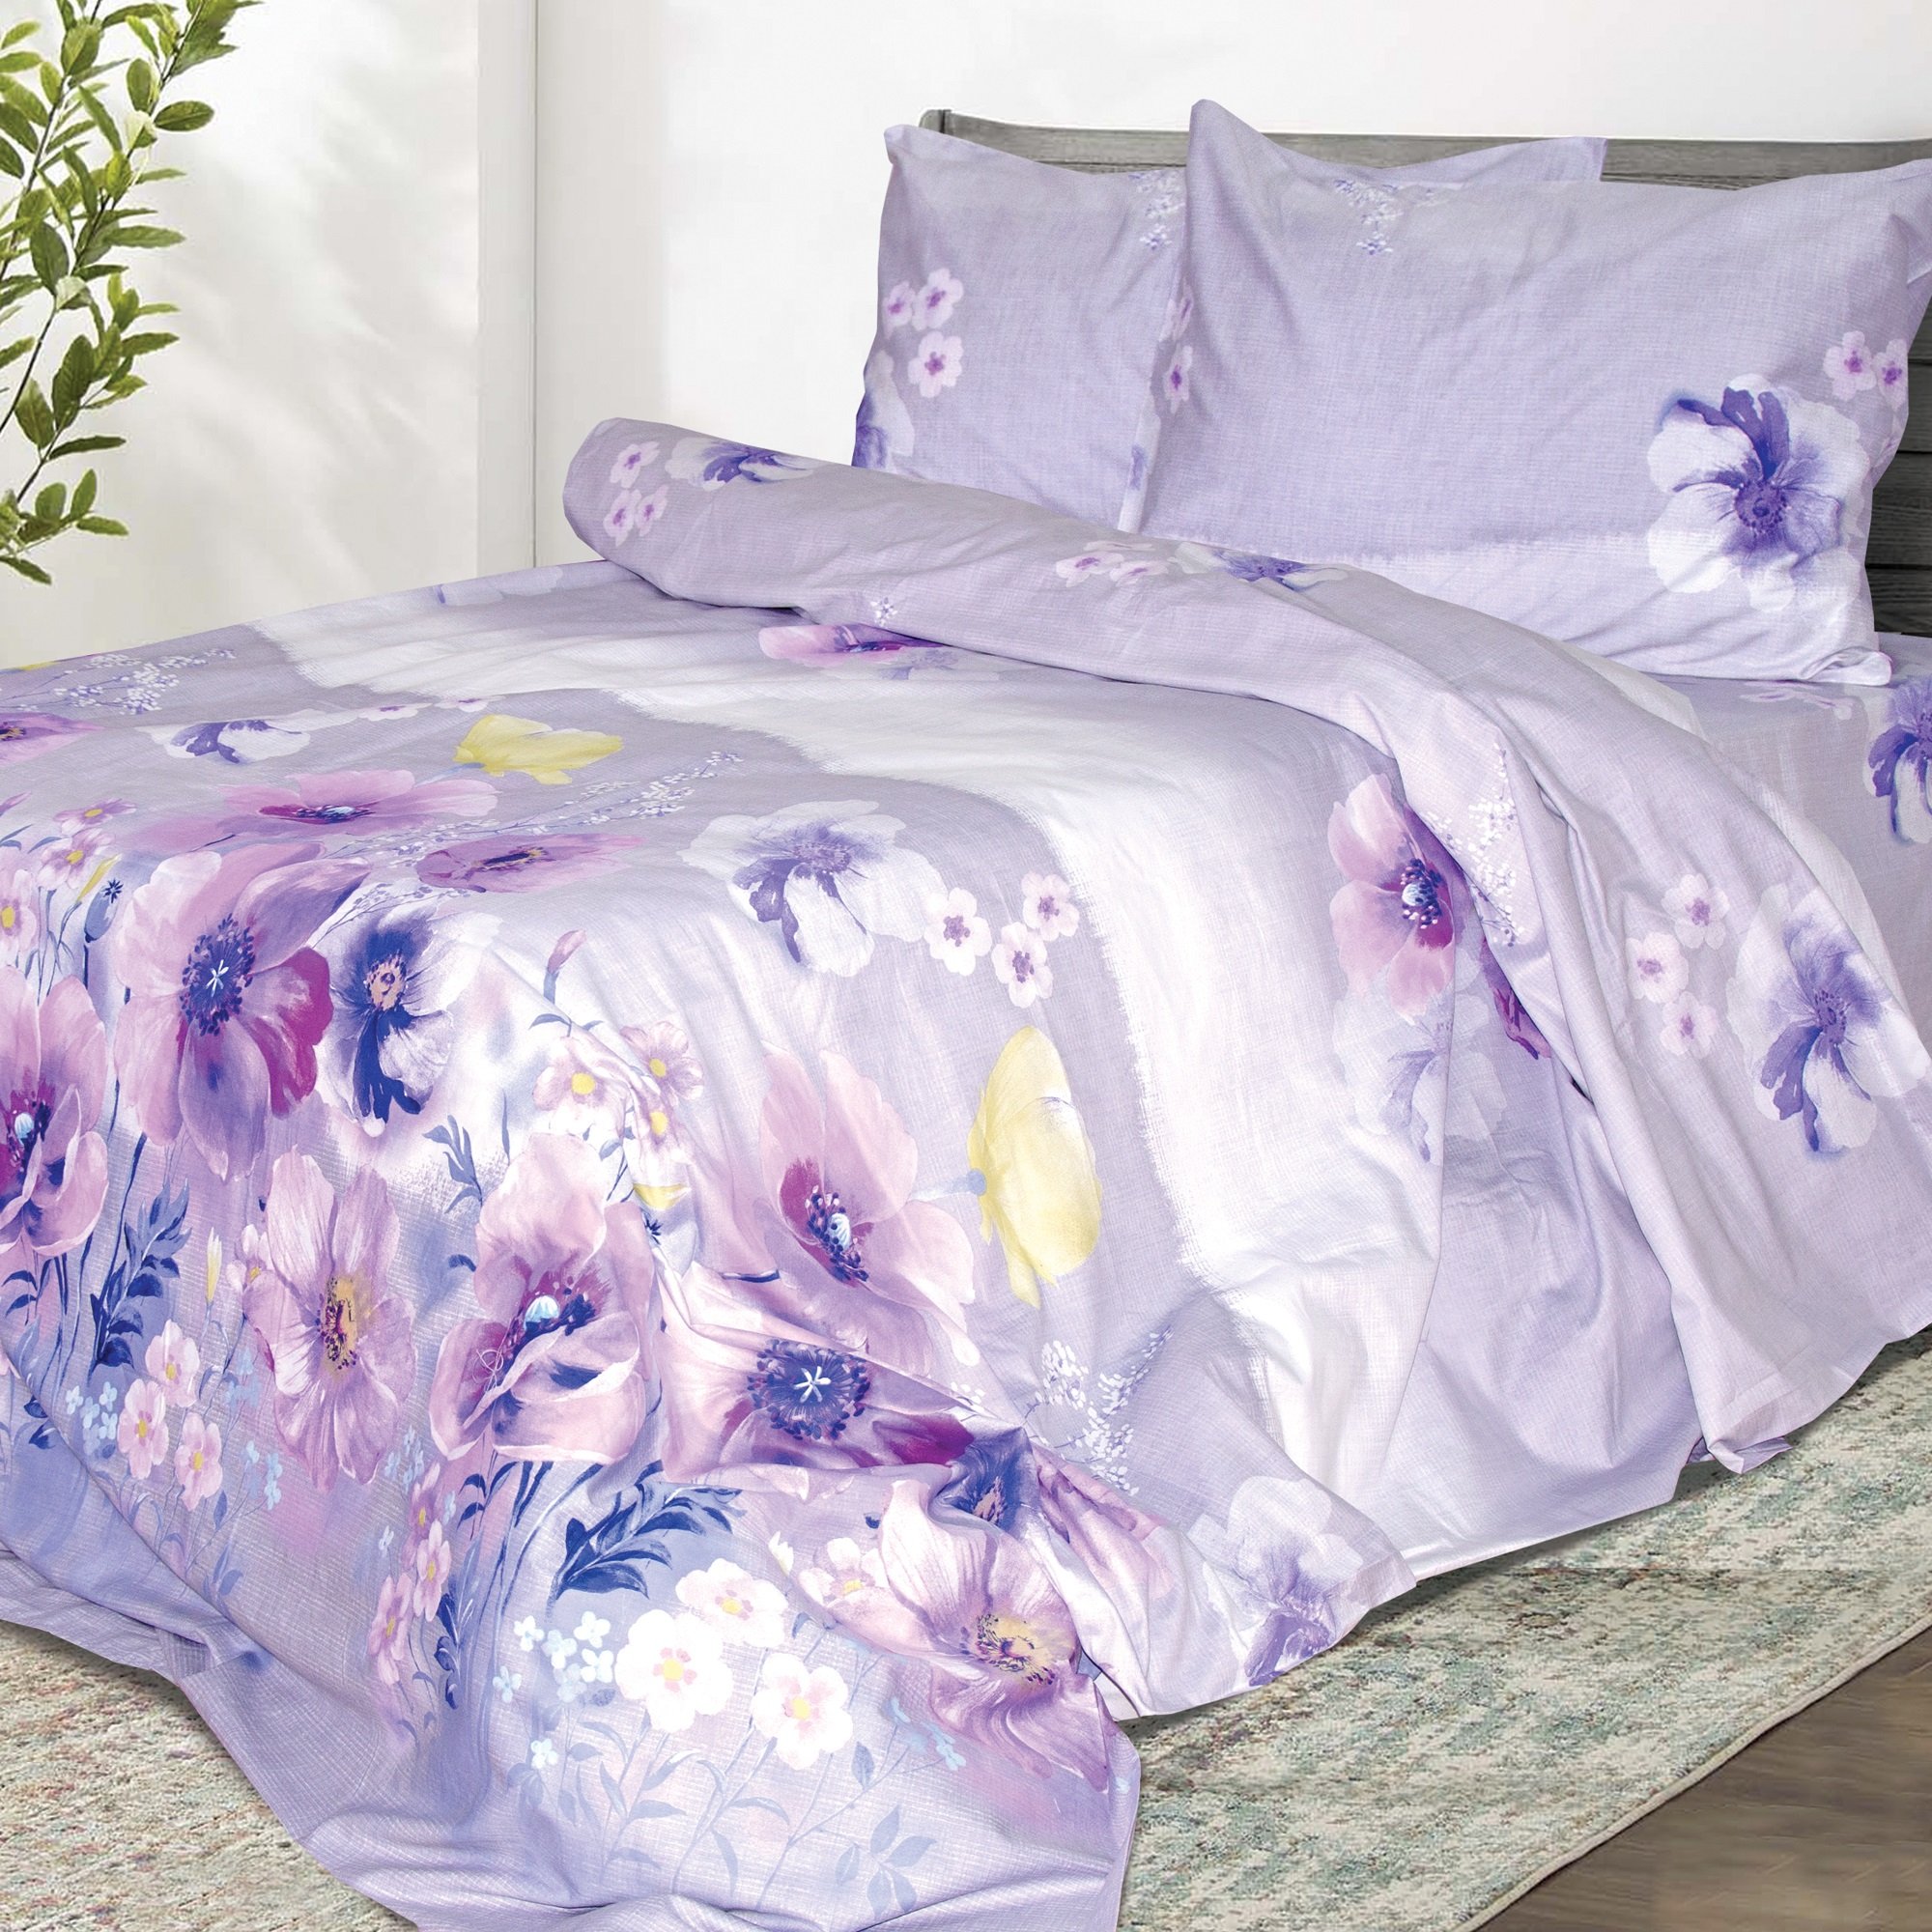 Комплект постельного белья Ярослав Сатин элегант se240 евро макси фиолетовый (48212) - фото 1